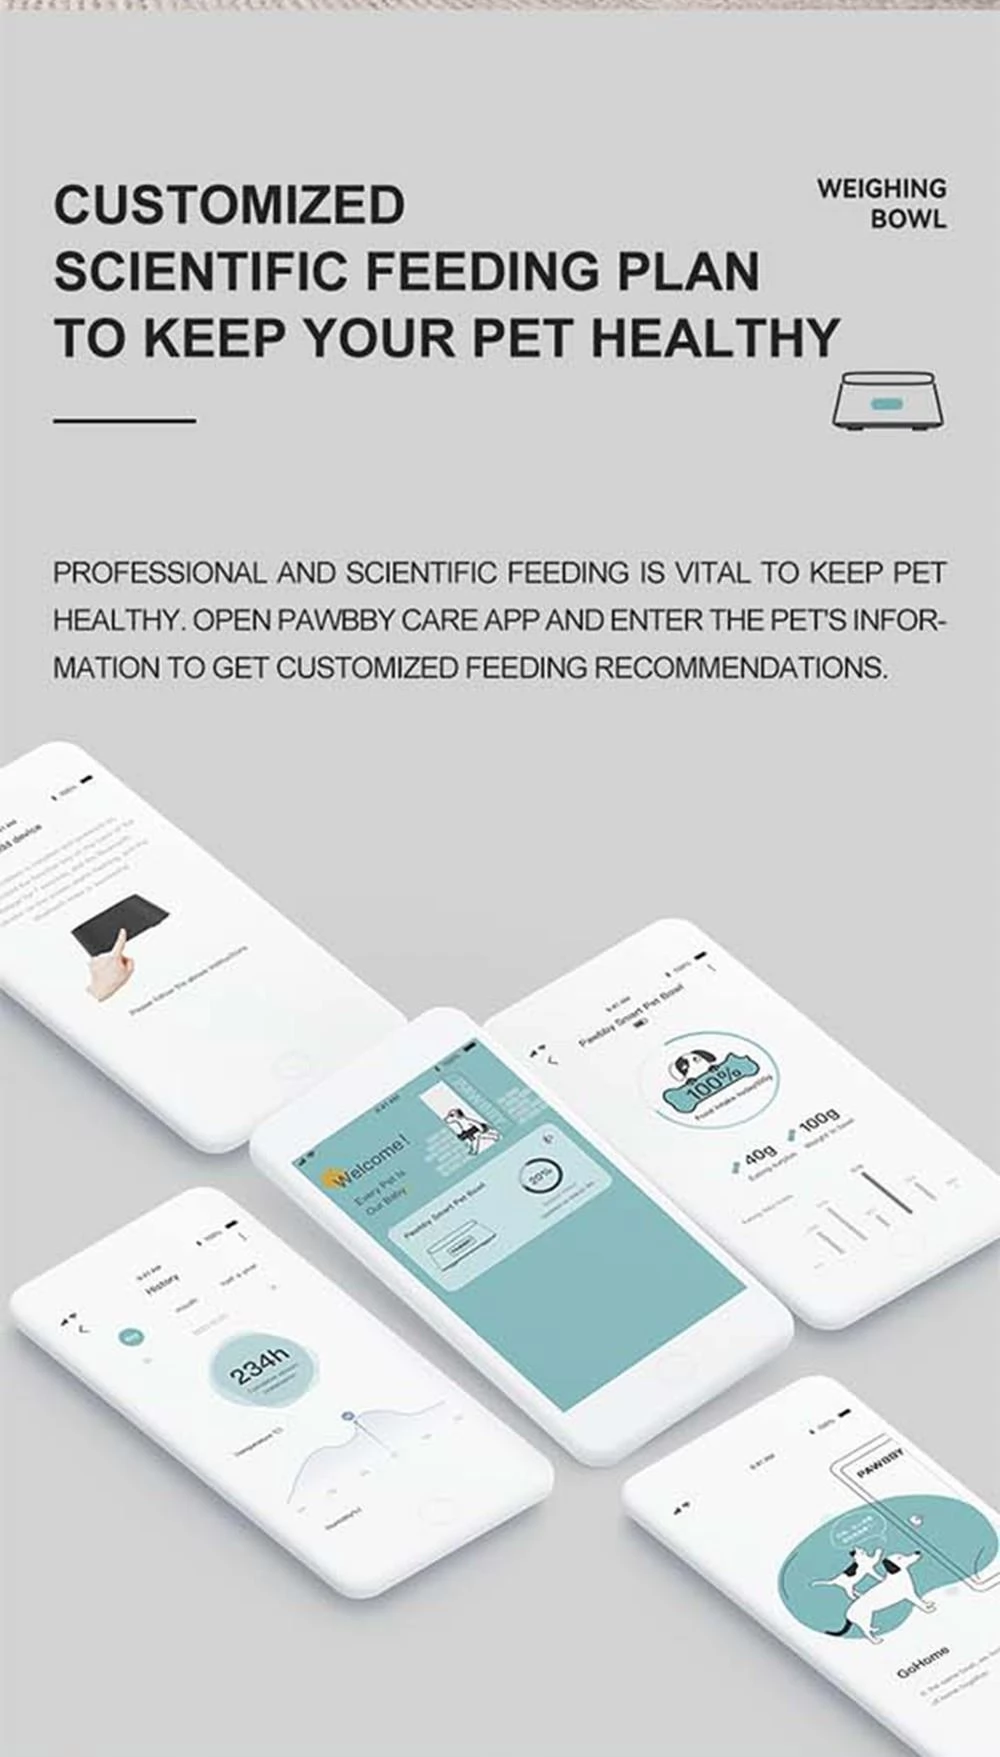 Pawbby Smart Pet Food Feeder Mit 4 Wiegeeinheiten, Edelstahl 304, App-Basierter Fressrekord Für Hund Und Katze